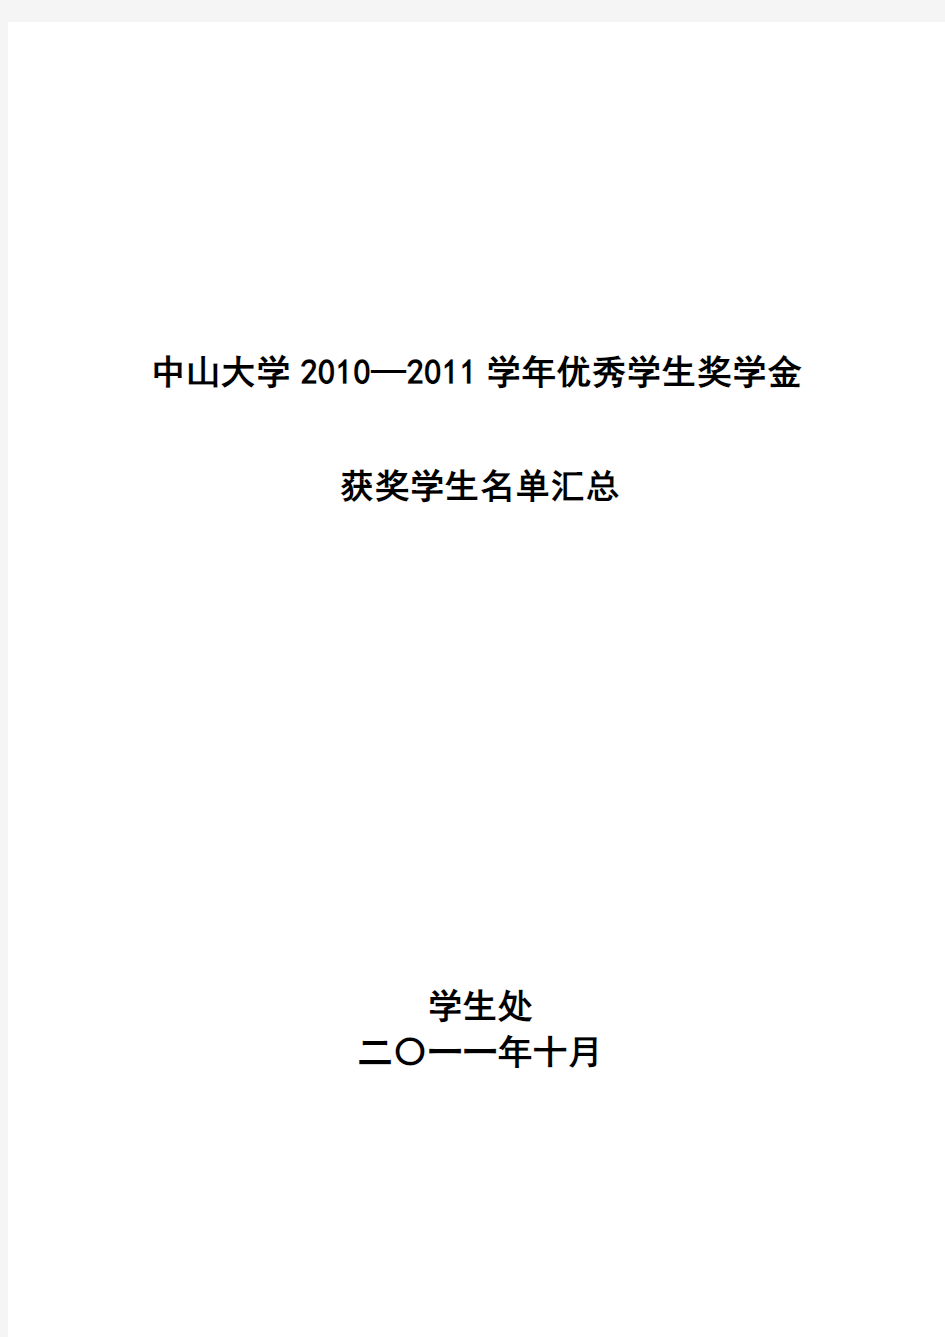 中山大学2010-2011学年度优秀学生奖学金获奖名单